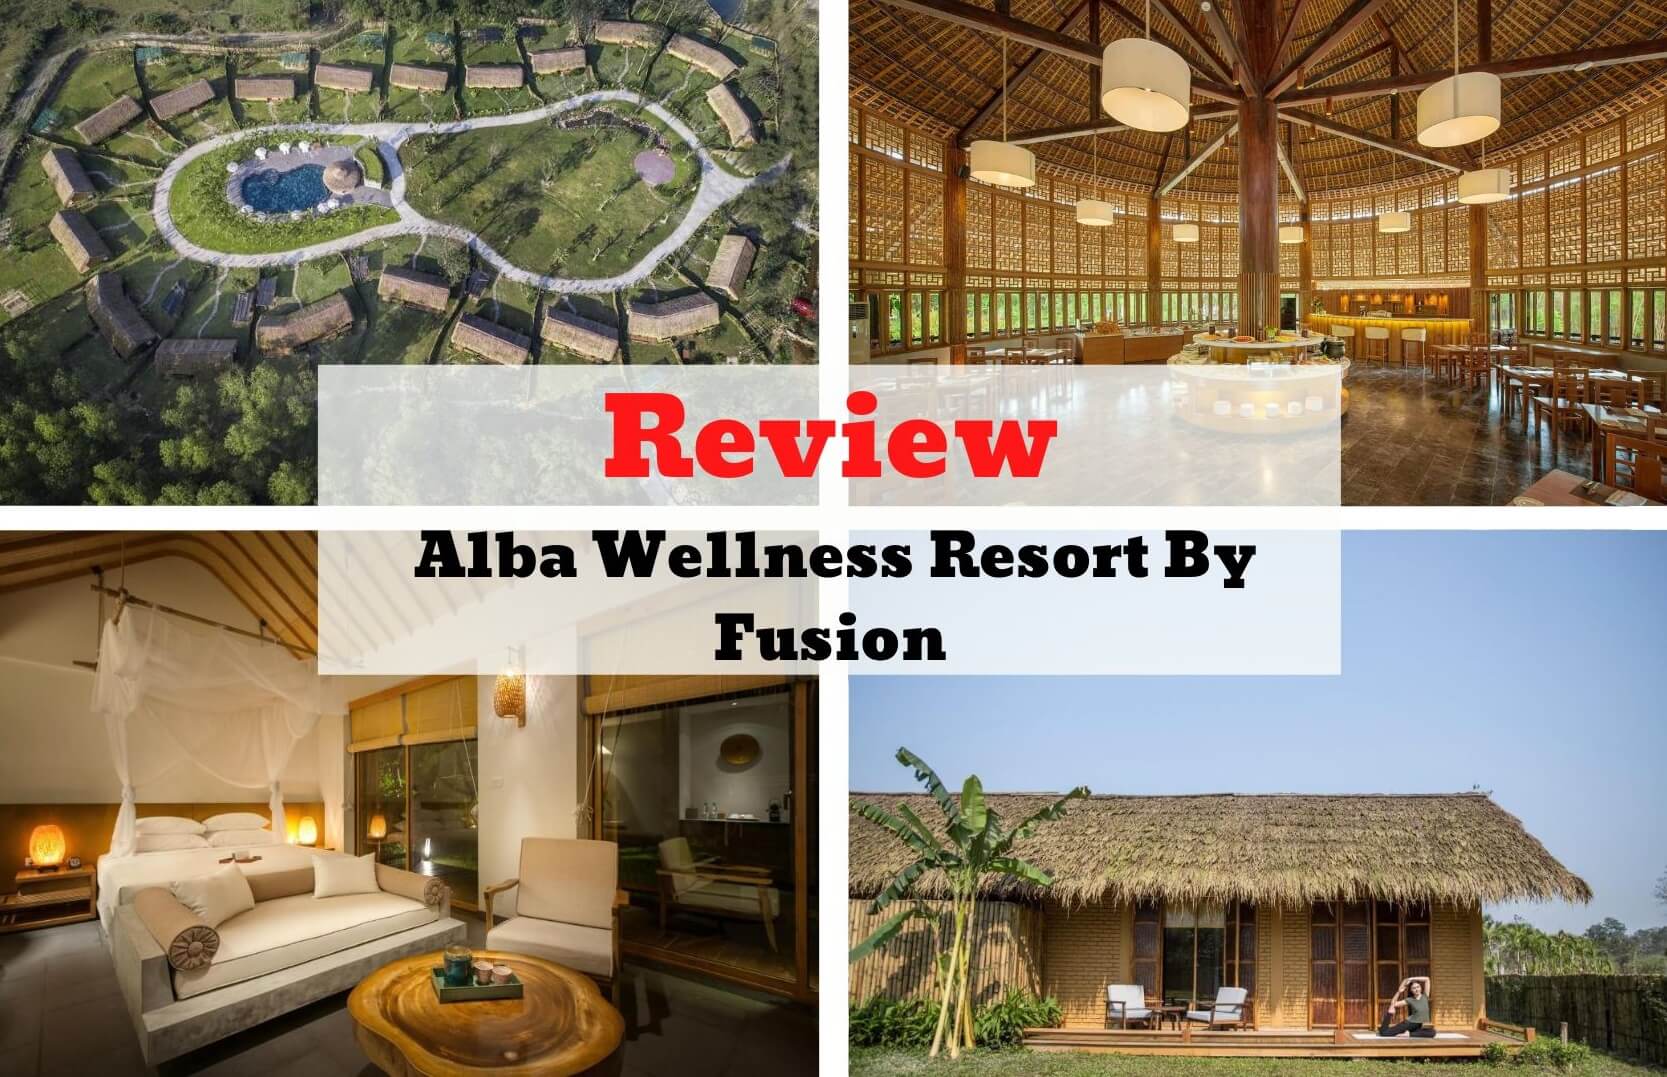 Review Alba Wellness Resort By Fusion - Suối nguồn thư thái tại xứ Huế mộng mơ